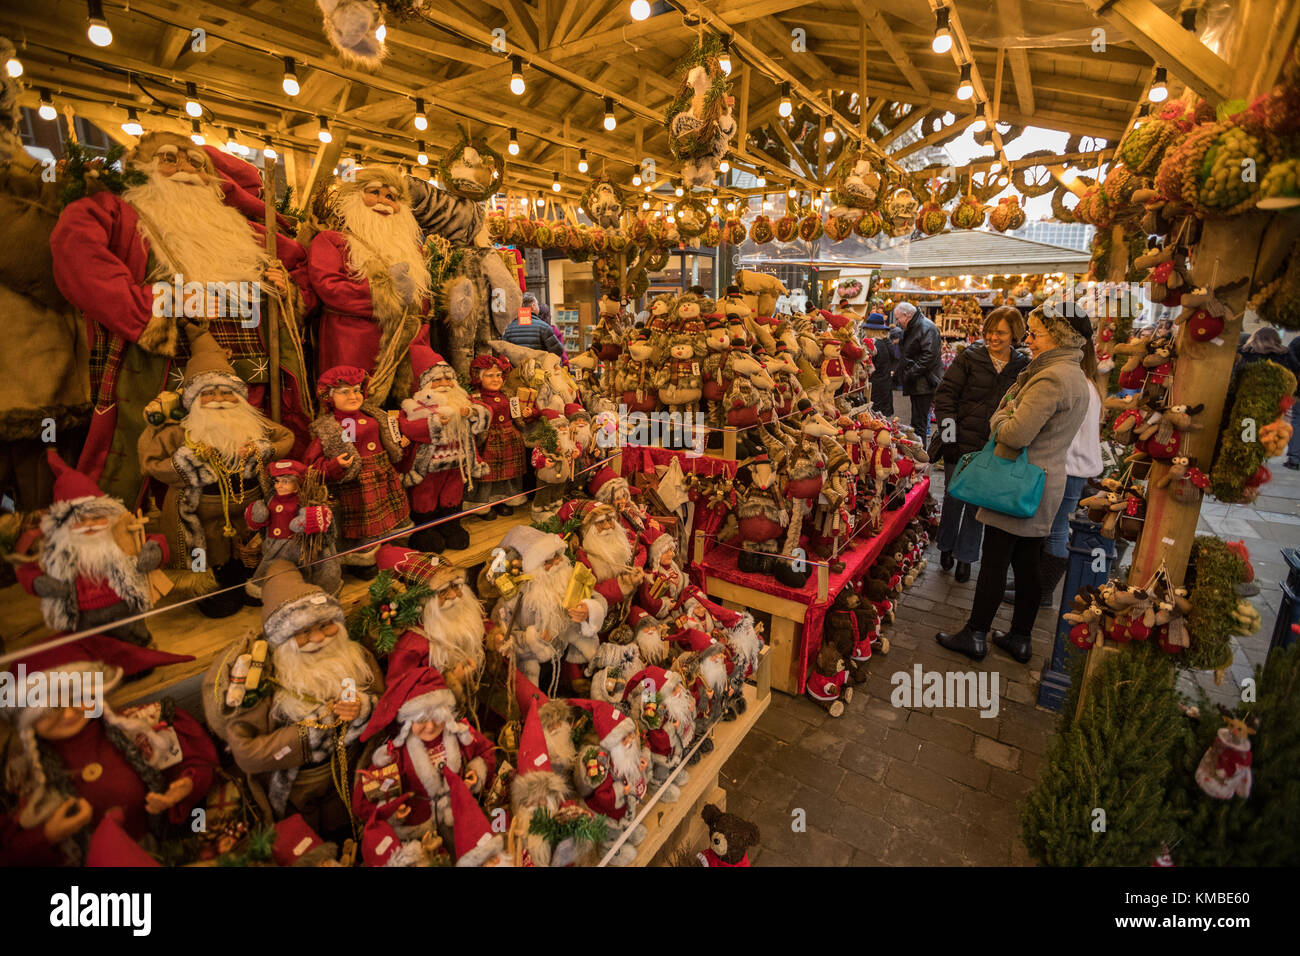 La gente de compras en puestos de mercado con productos navideños en Manchester los mercados de Navidad alrededor de la ciudad, Manchester, Inglaterra, Reino Unido. Foto de stock